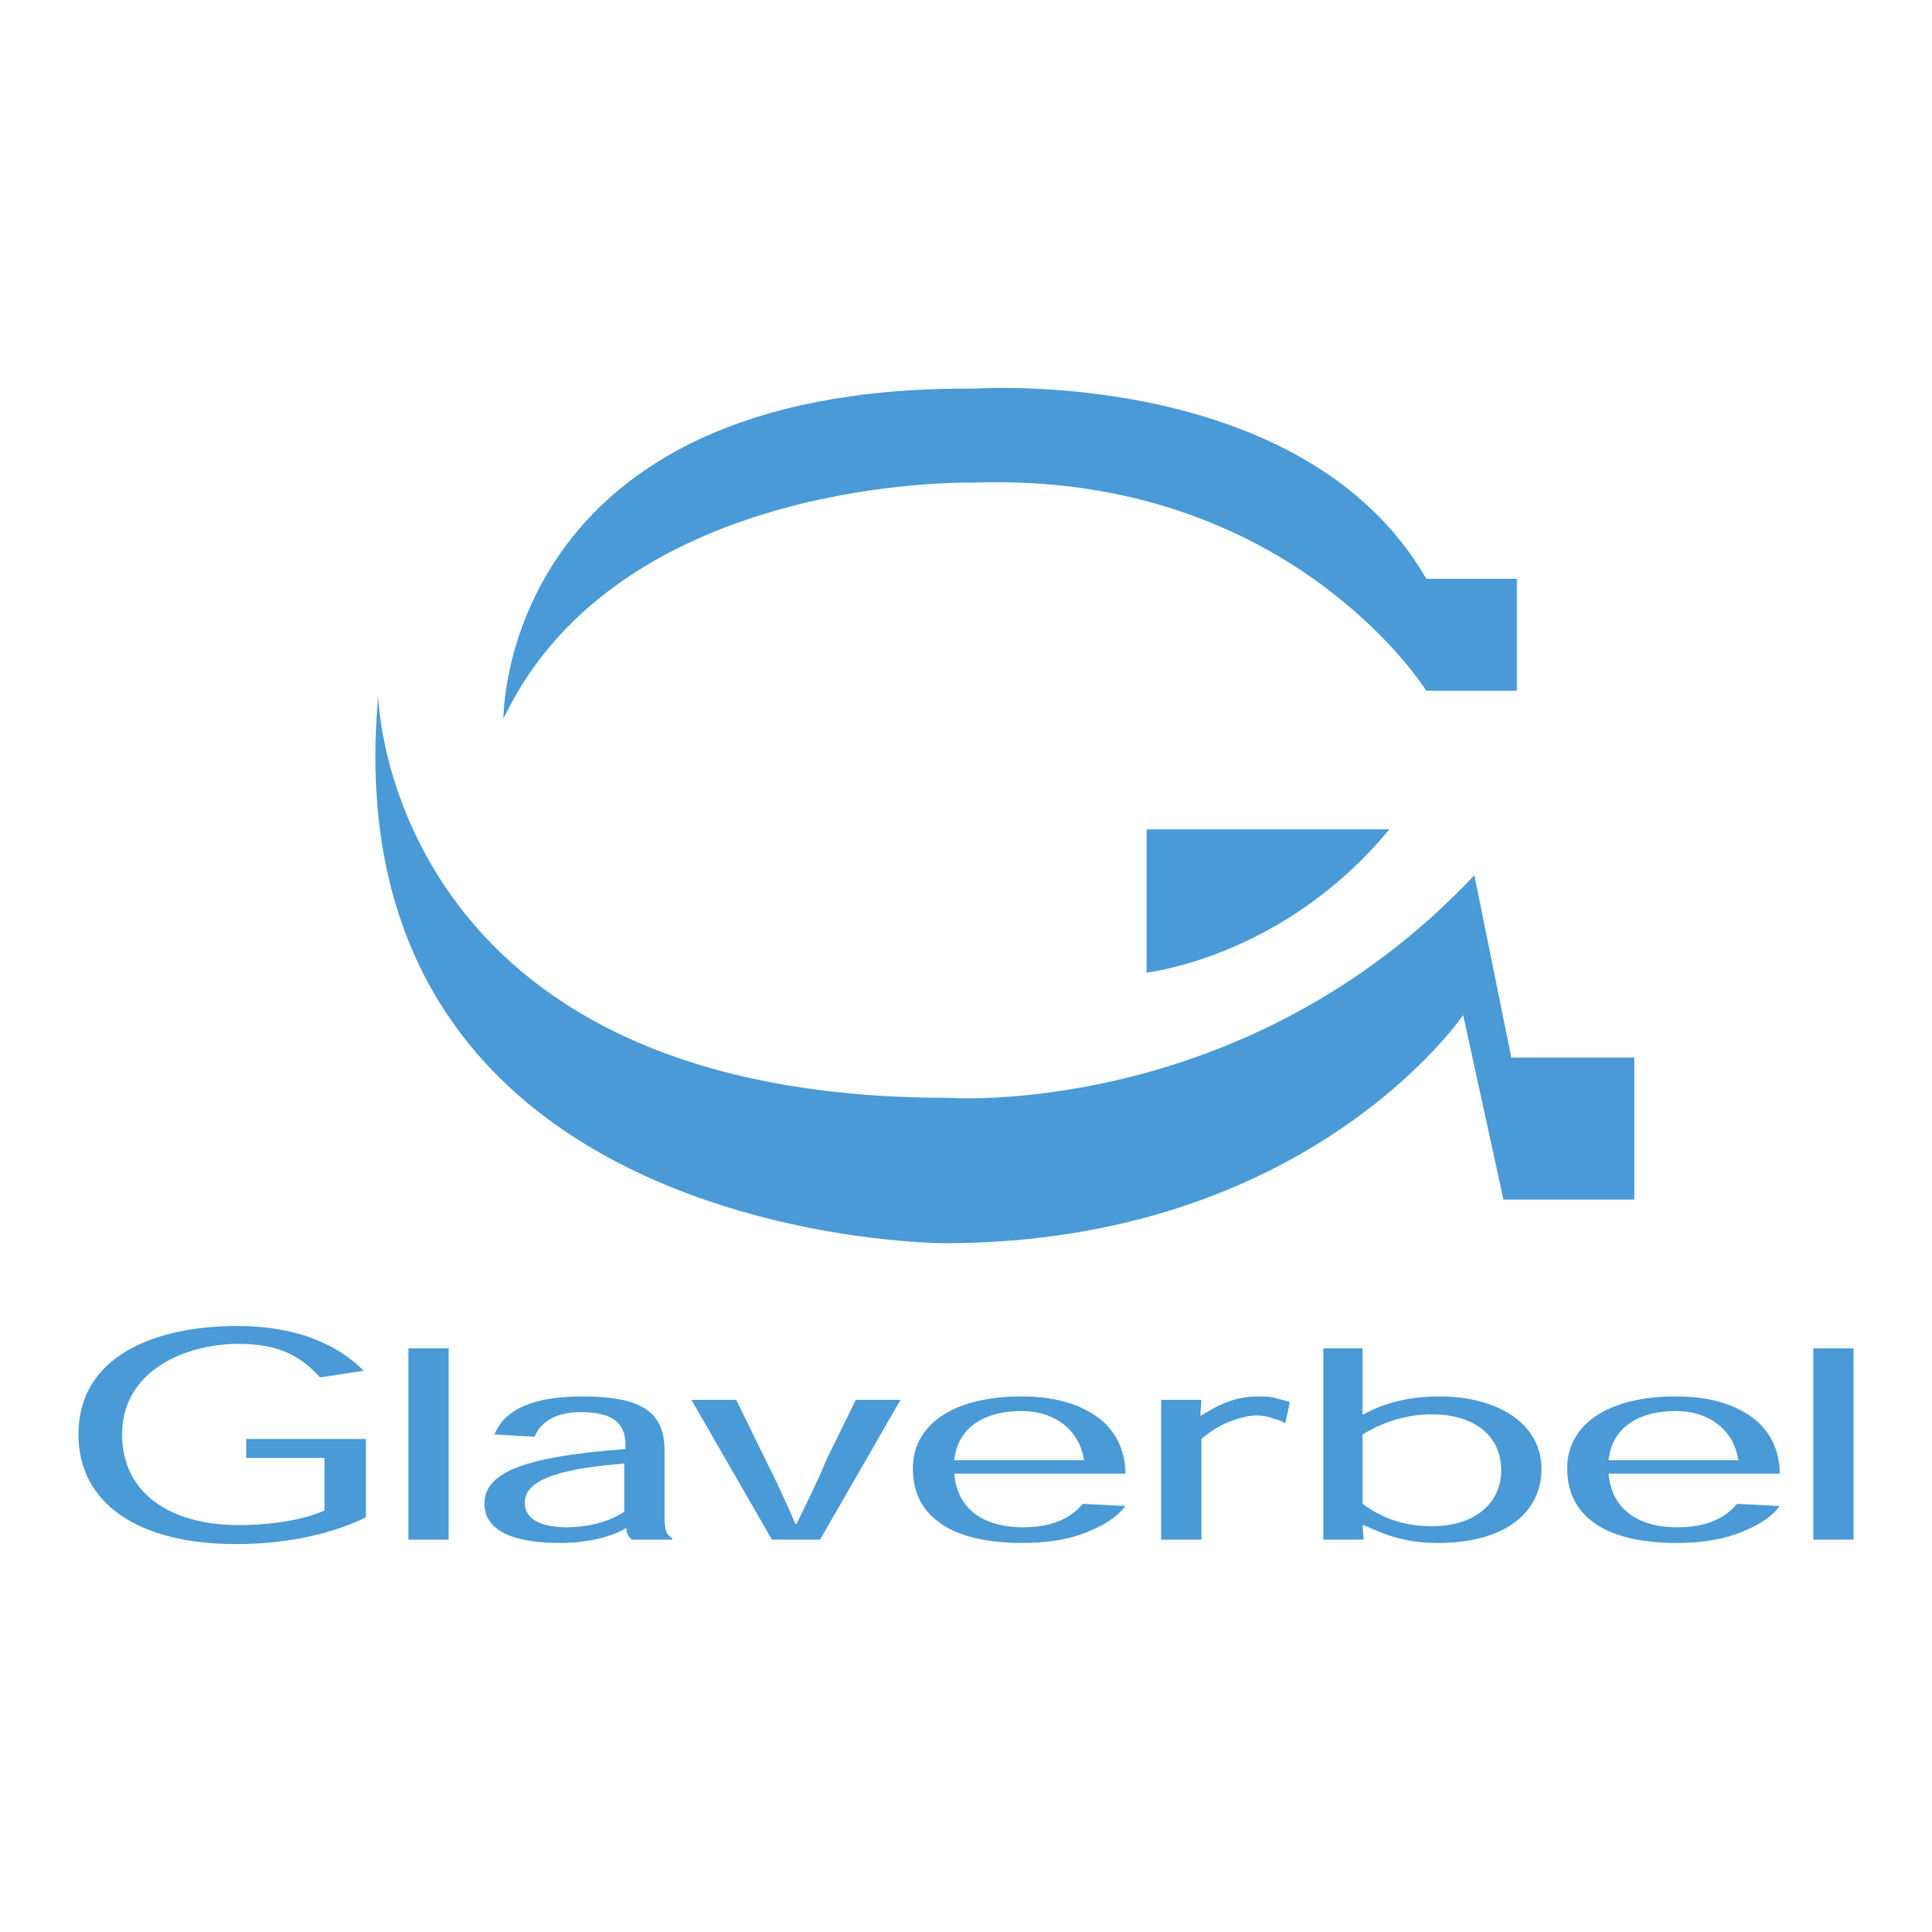 glaverbel-logo-png-transparent